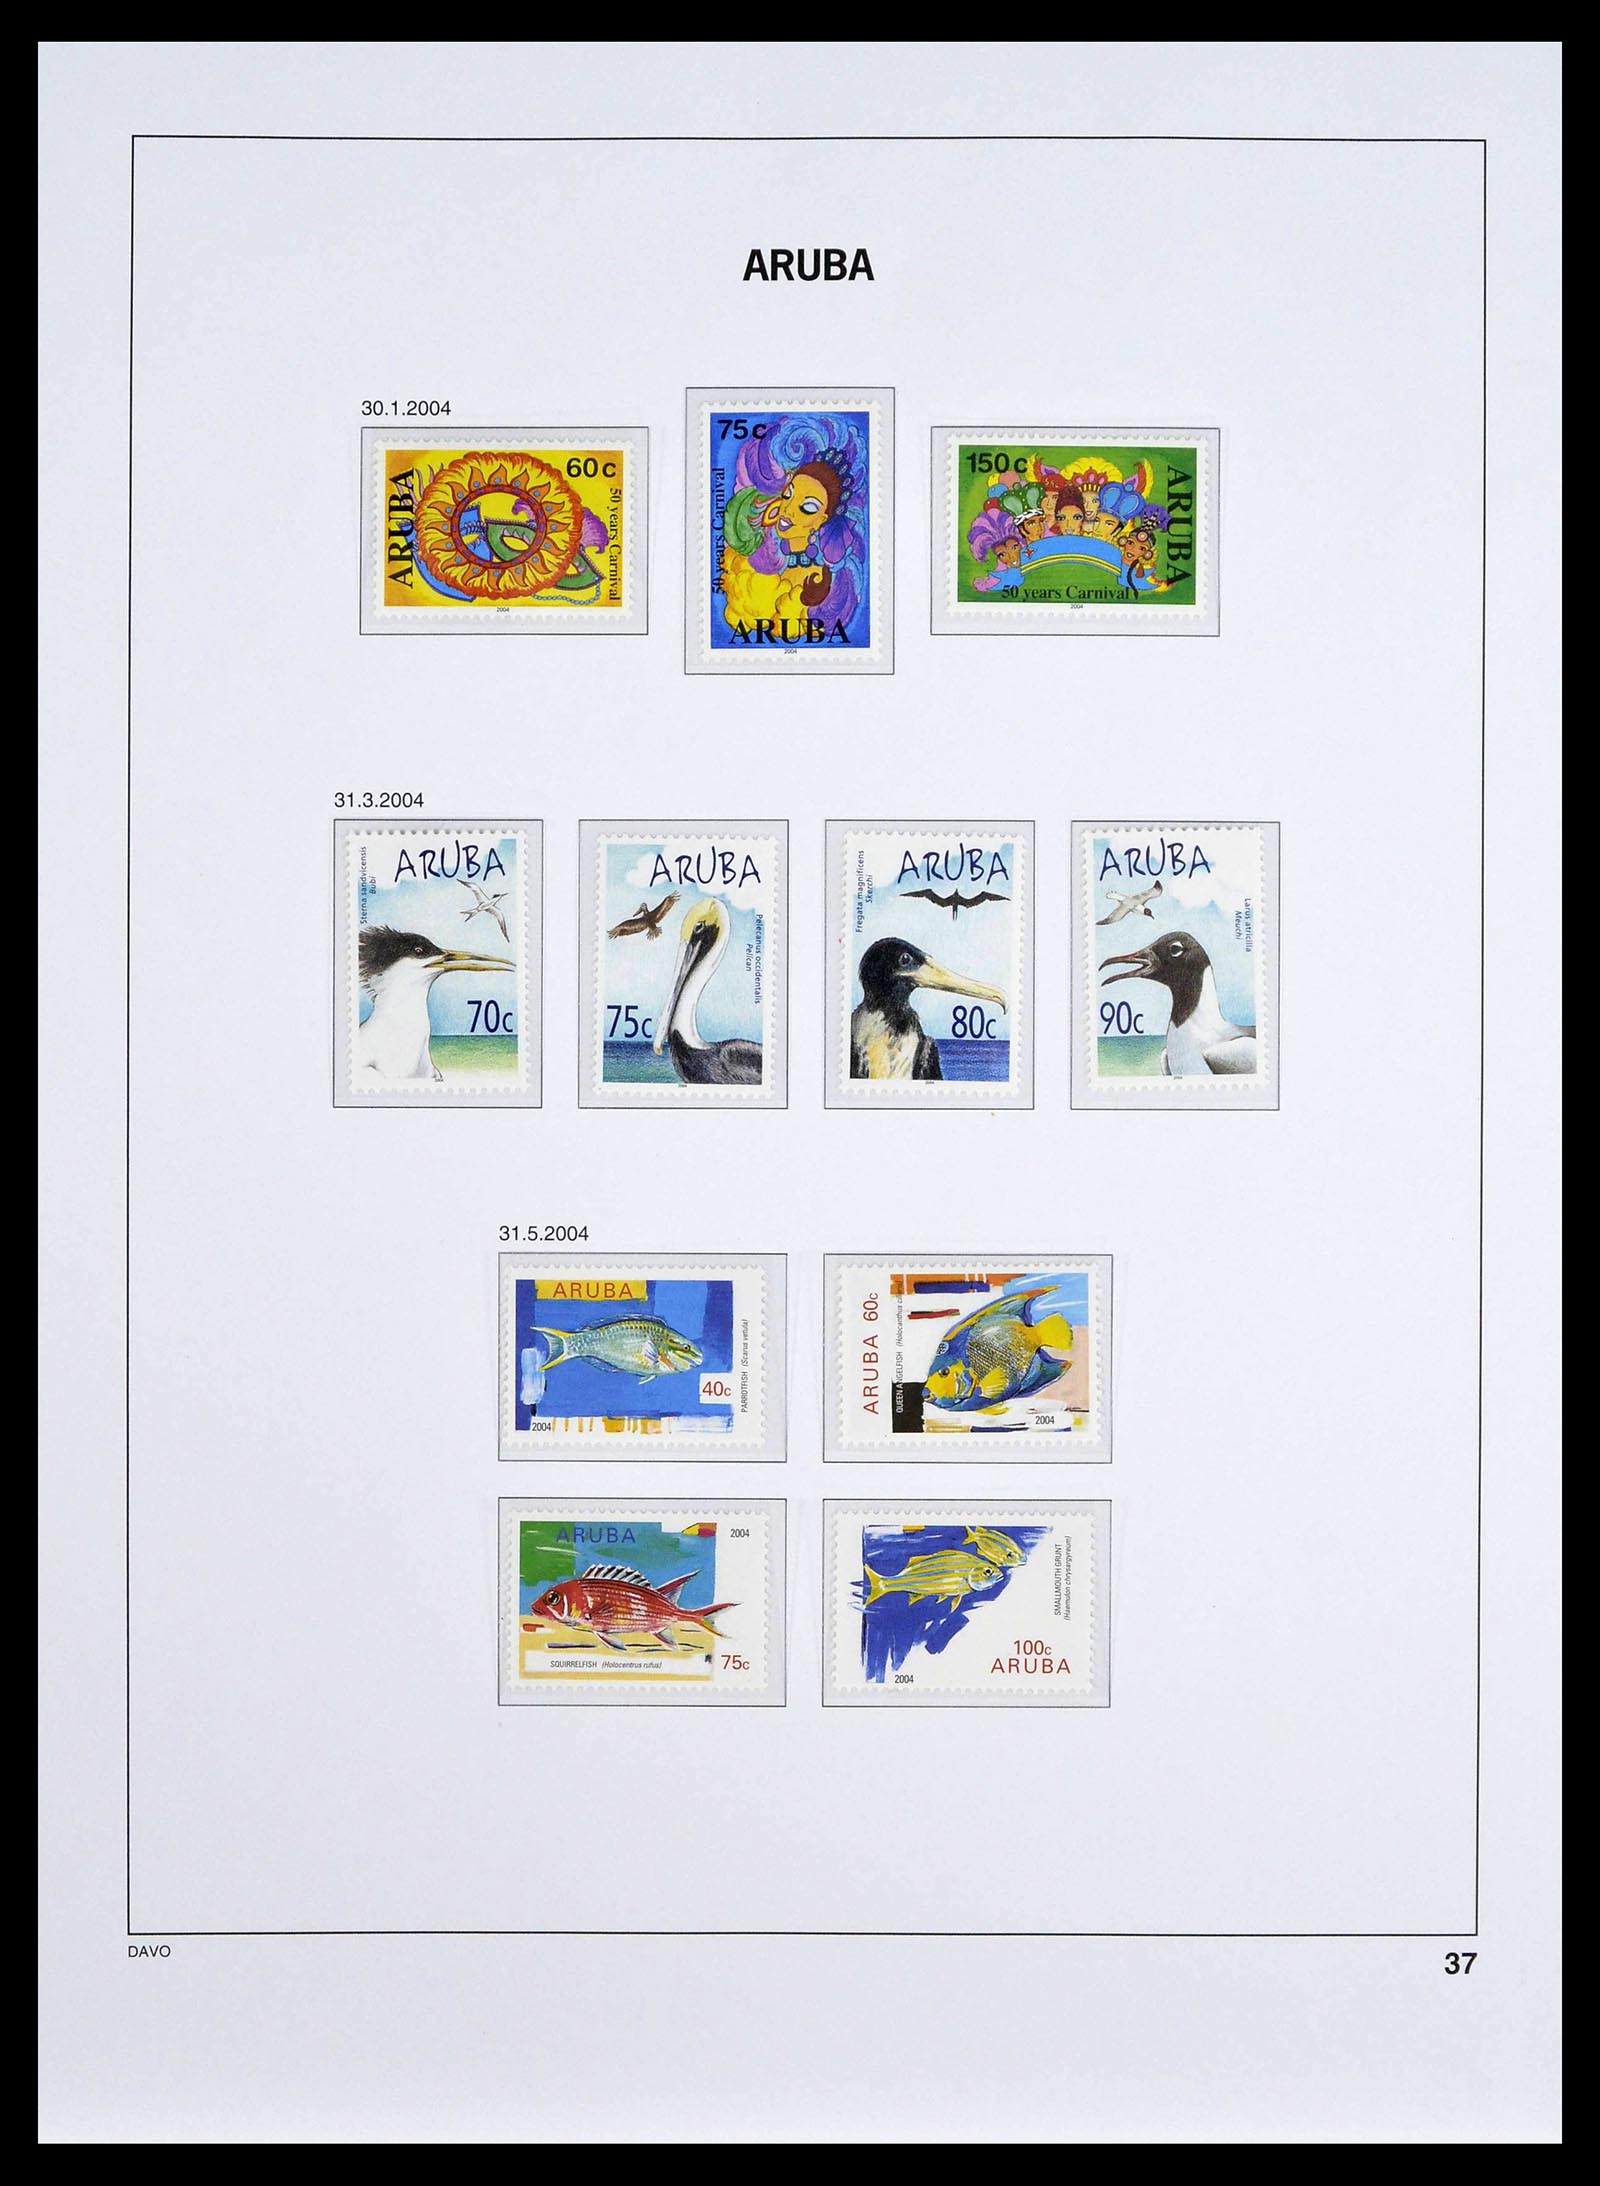 39361 0037 - Stamp collection 39361 Aruba 1986-2013.